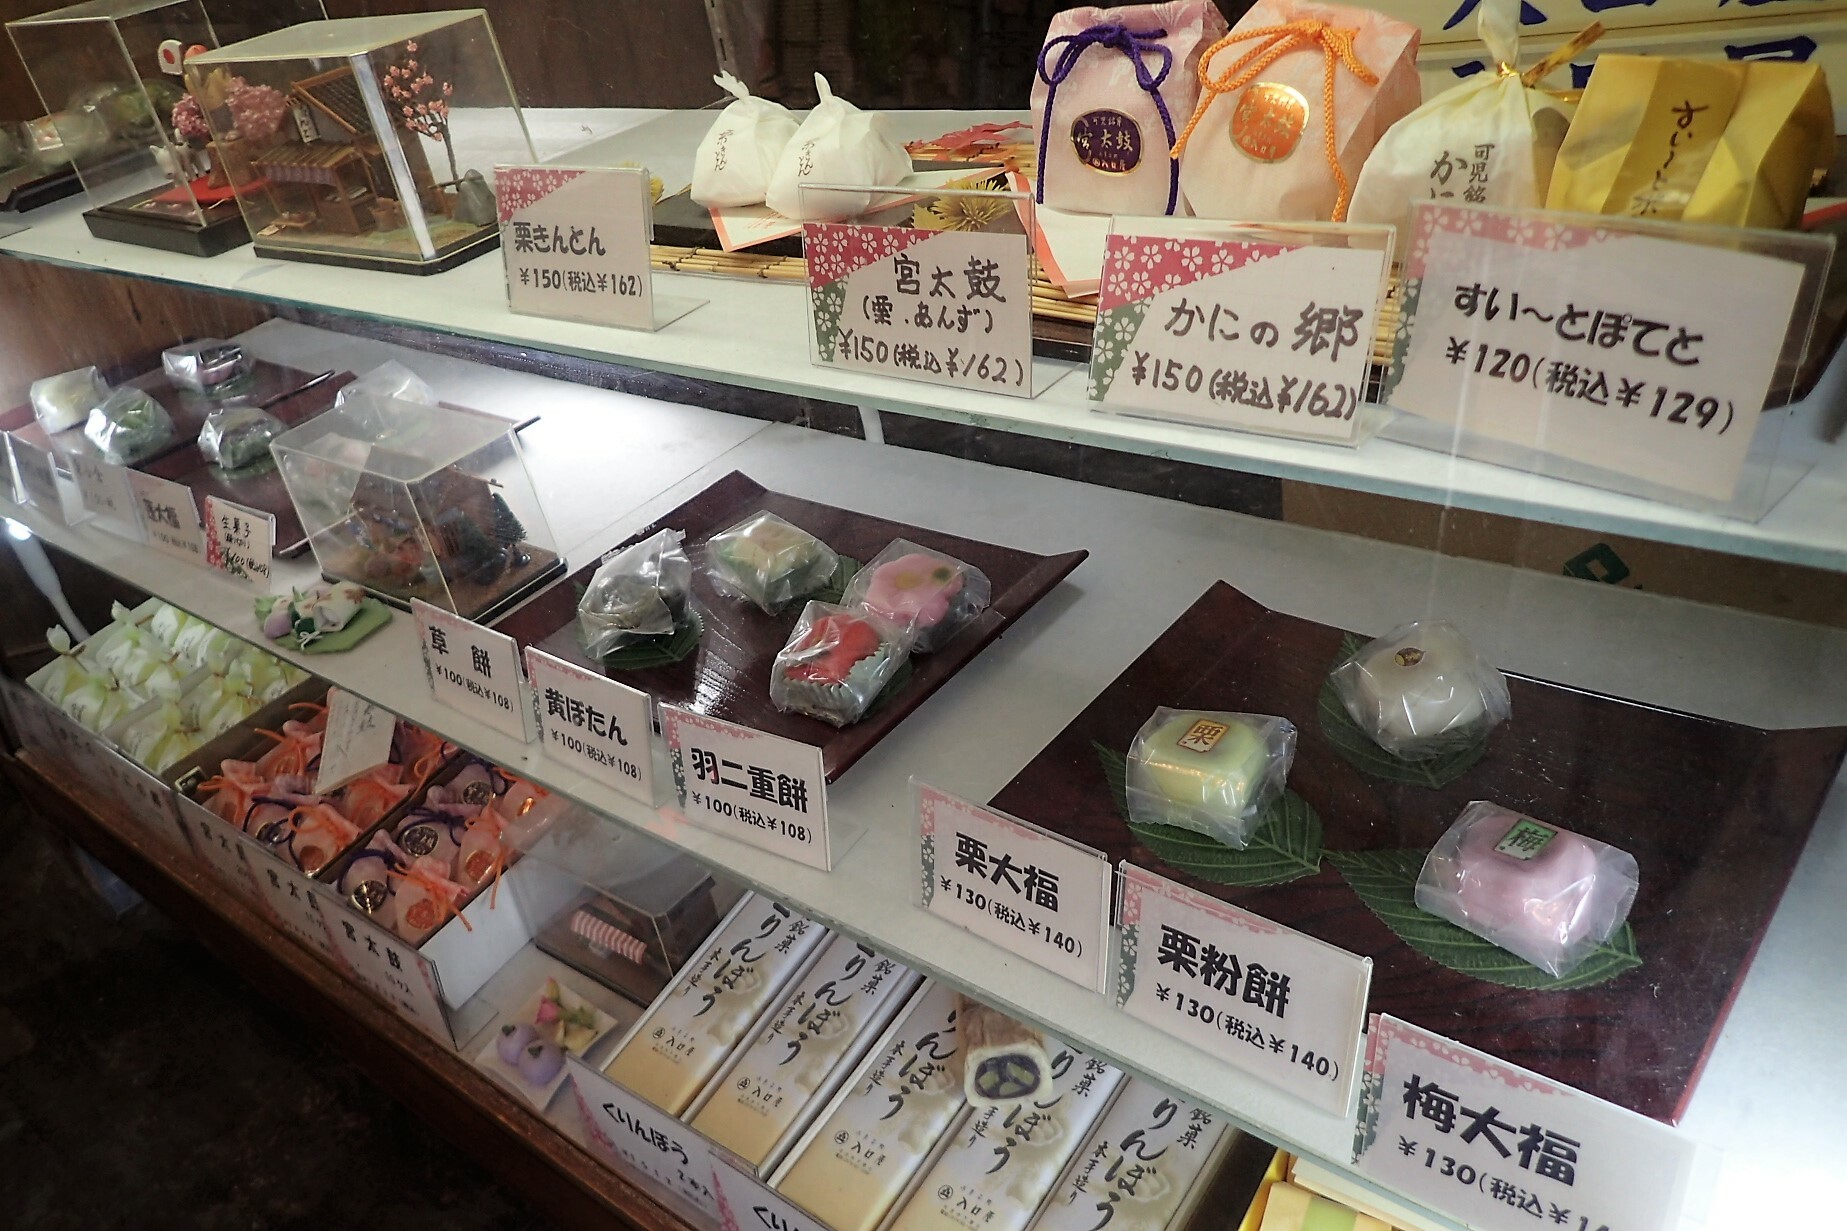 レジカウンターの下に並んだ和菓子